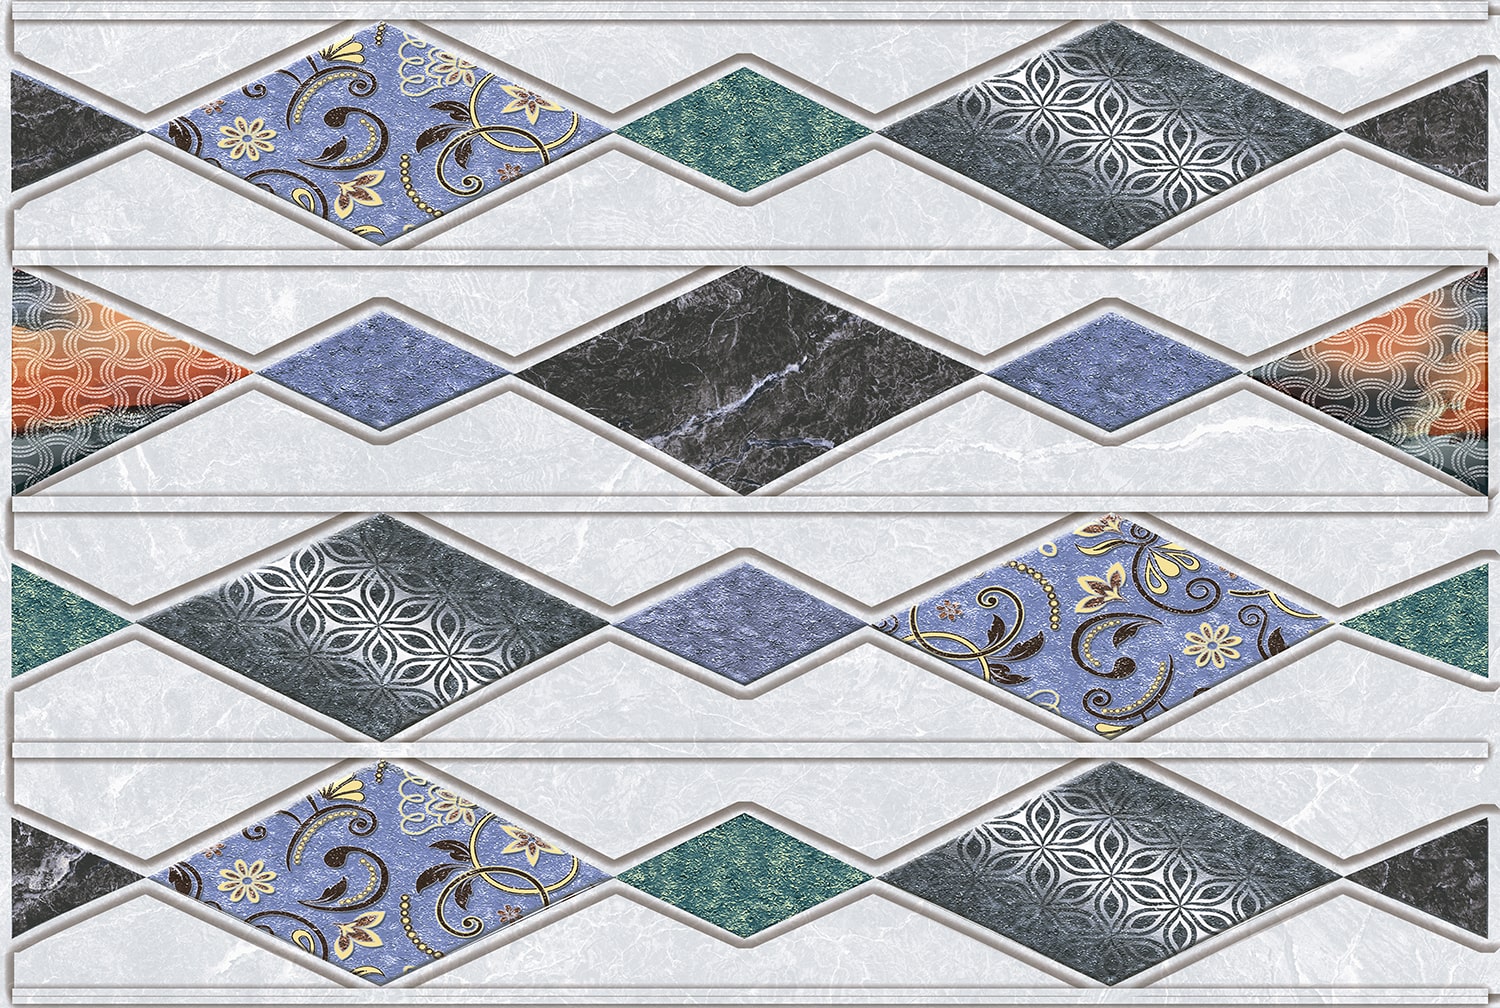 Multi Colour Tiles for Bathroom Tiles, Kitchen Tiles, Accent Tiles